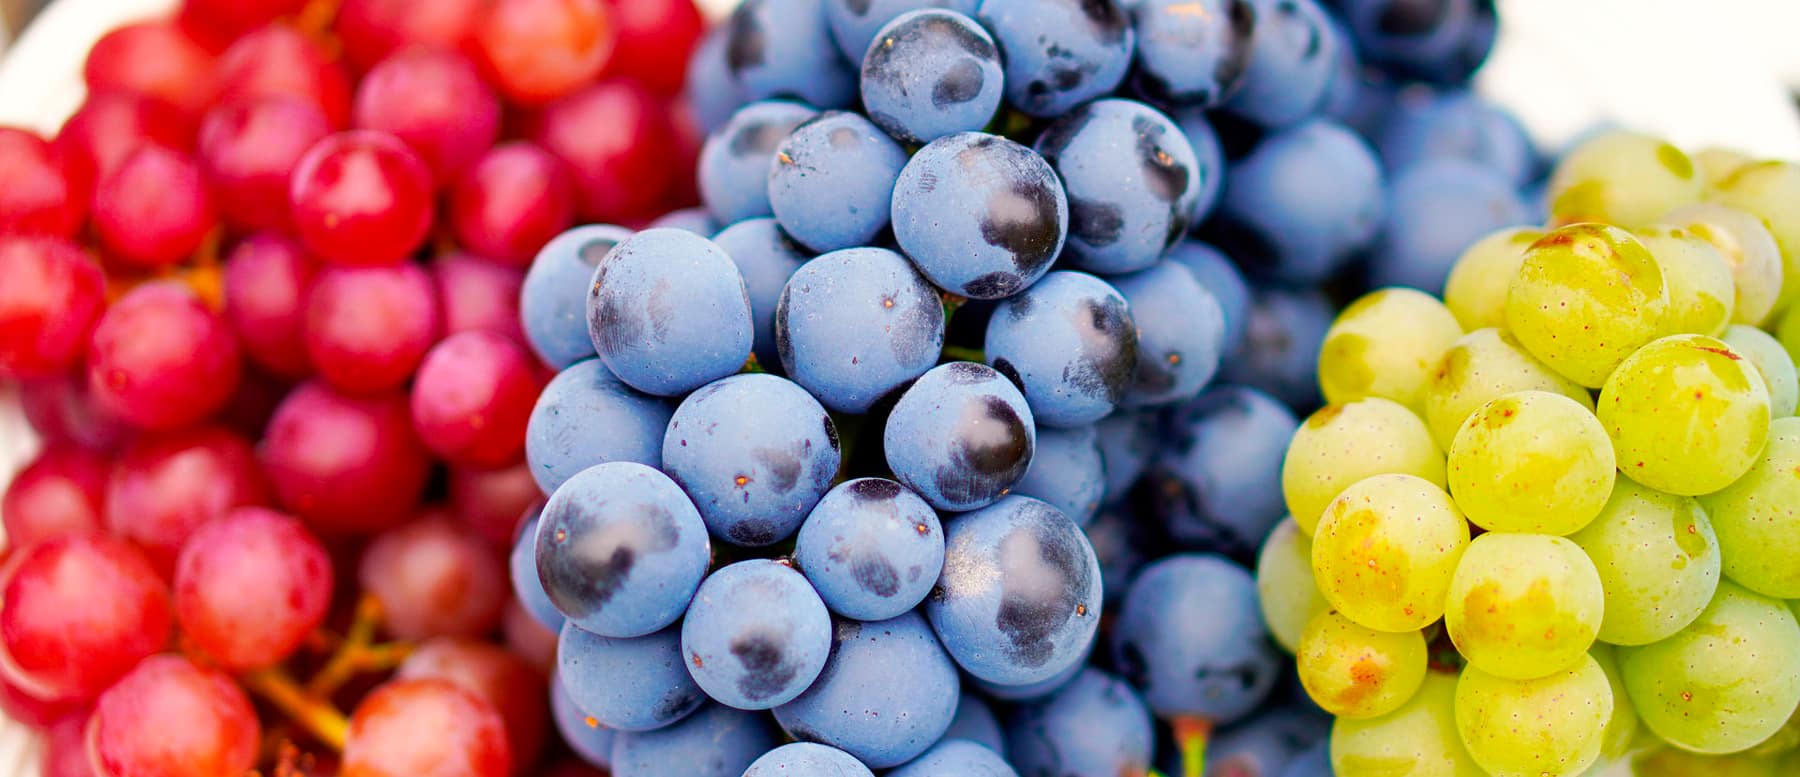 sitio comestible fluido Las uvas: Sus X propiedades y razones para comerlas durante este otoño